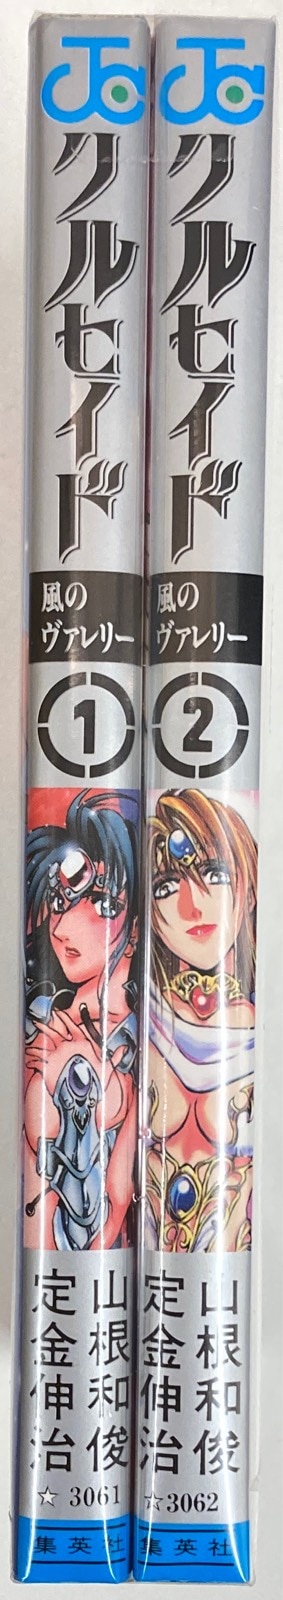 集英社 ジャンプコミックス 山根和俊 クルセイド 全2巻 初版セット